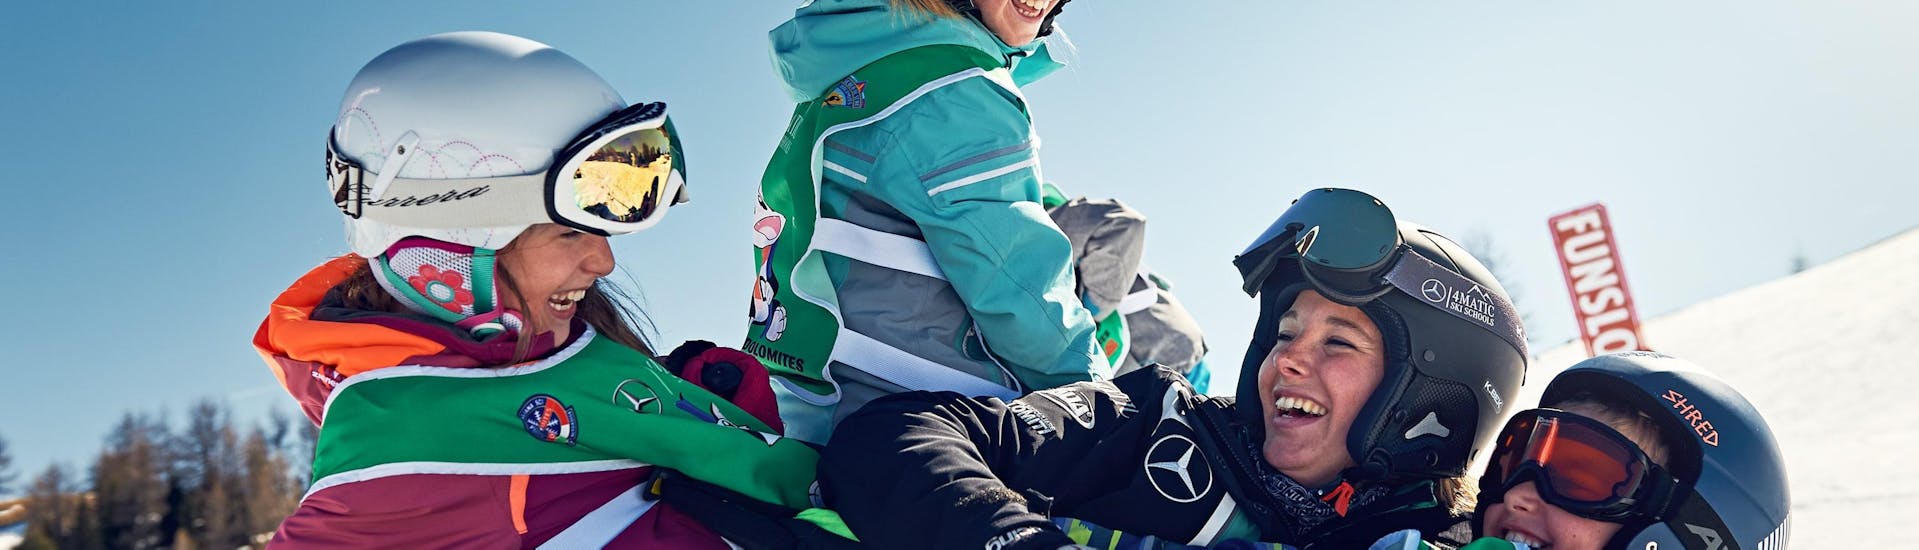 Kinder haben Spaß in La Villa während eines privaten Skikurses für Kinder aller Stufen.